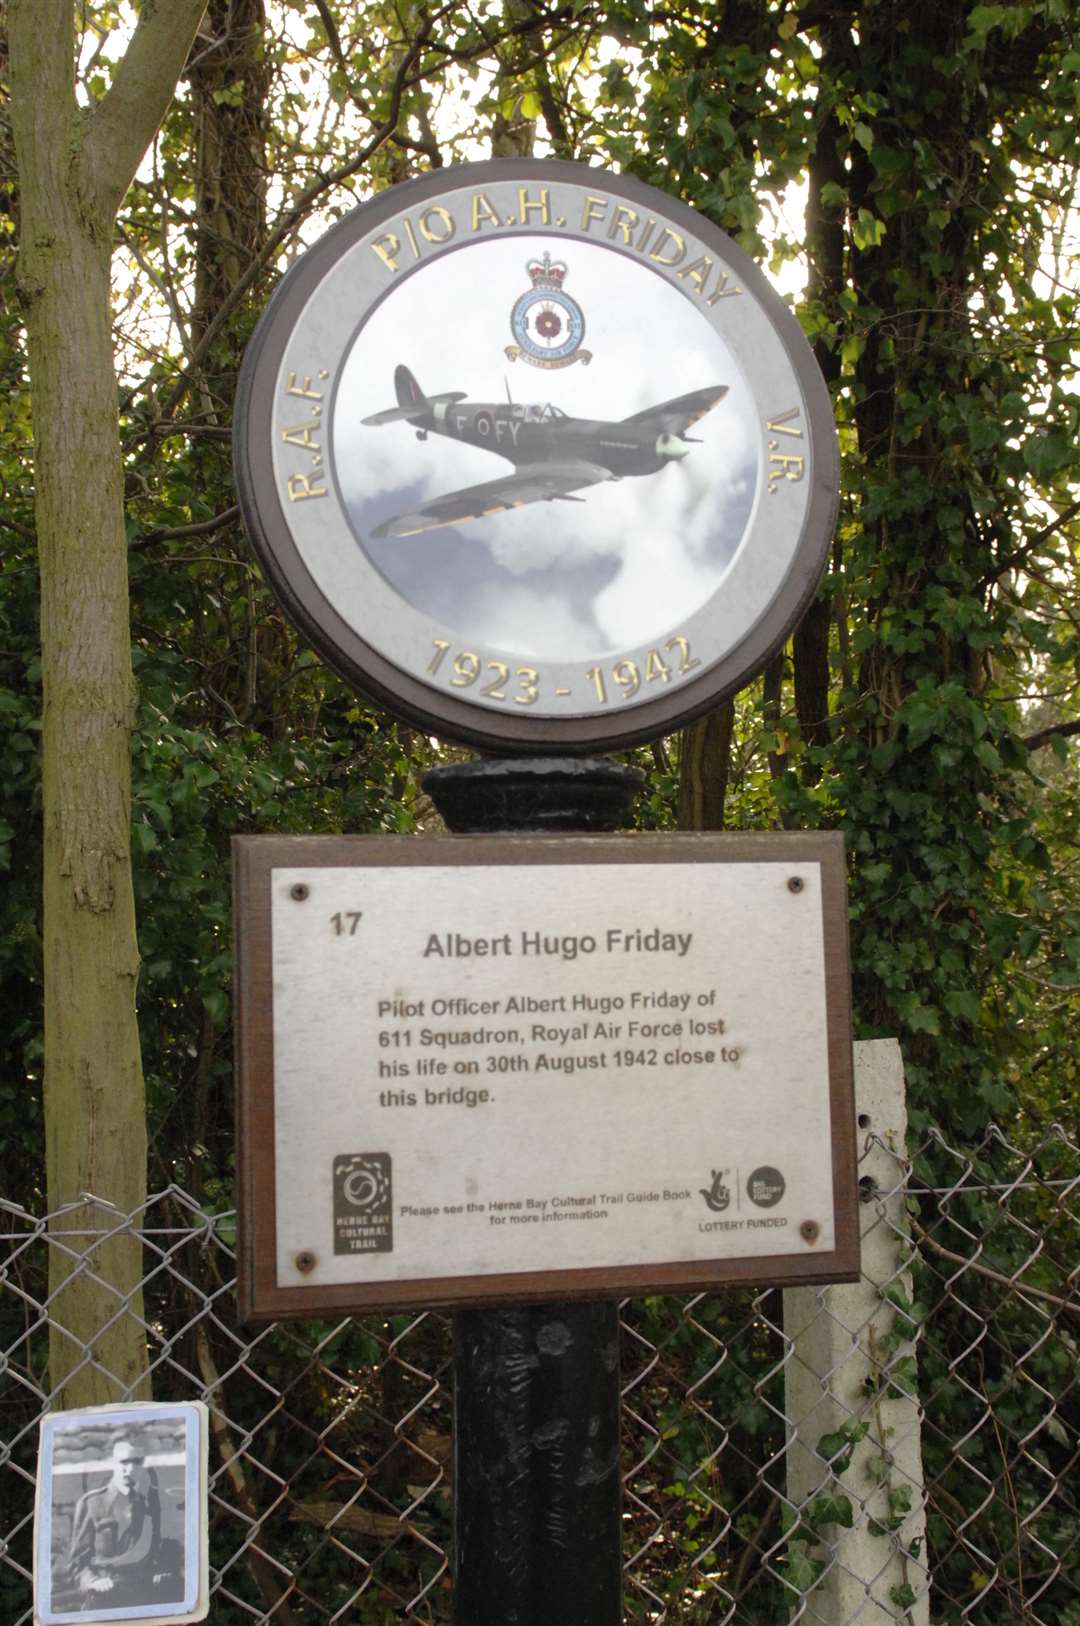 The Albert Hugo Friday memorial